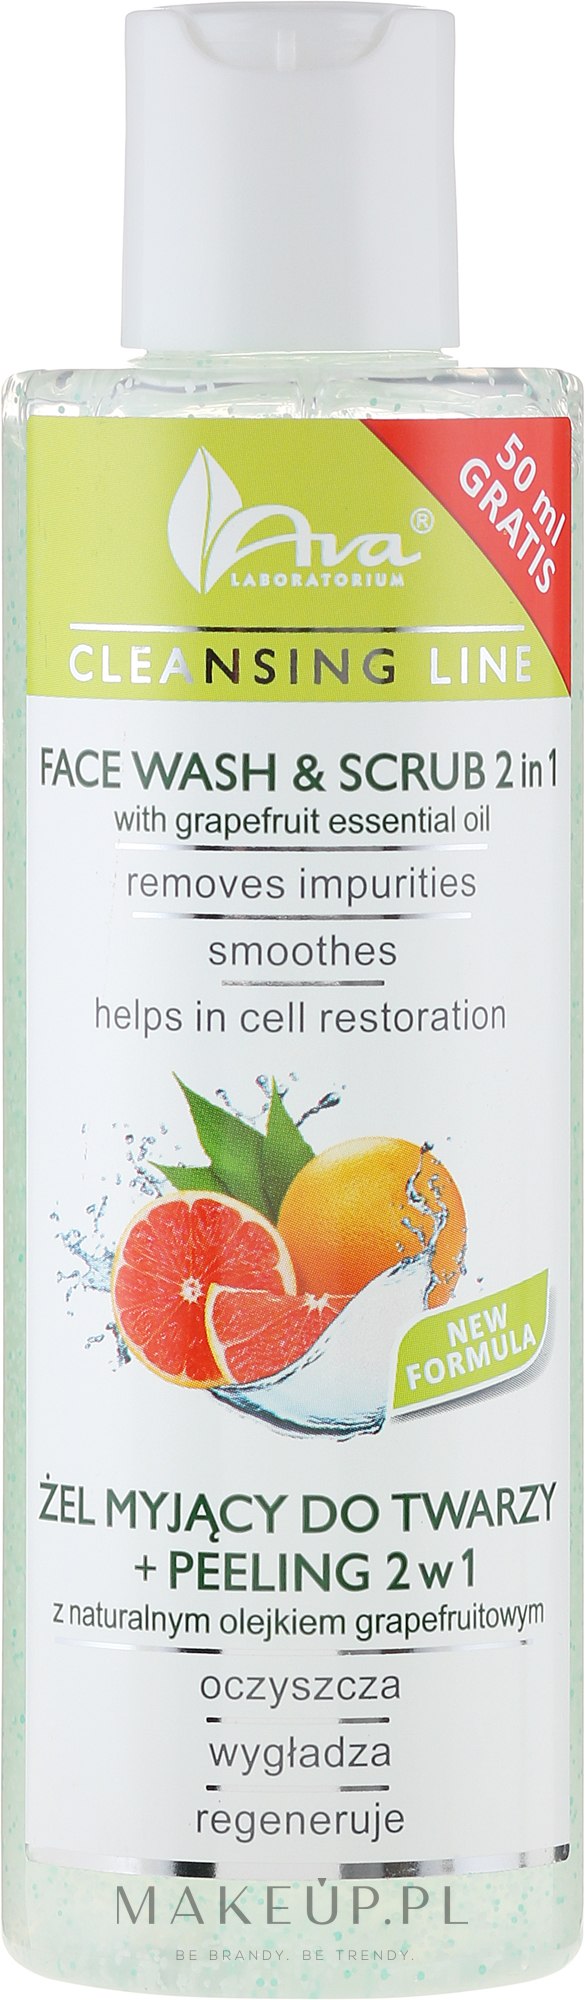 Żel myjący do twarzy + peeling 2 w 1 z naturalnym olejkiem grapefruitowym - AVA Laboratorium Cleansing Line — Zdjęcie 200 ml